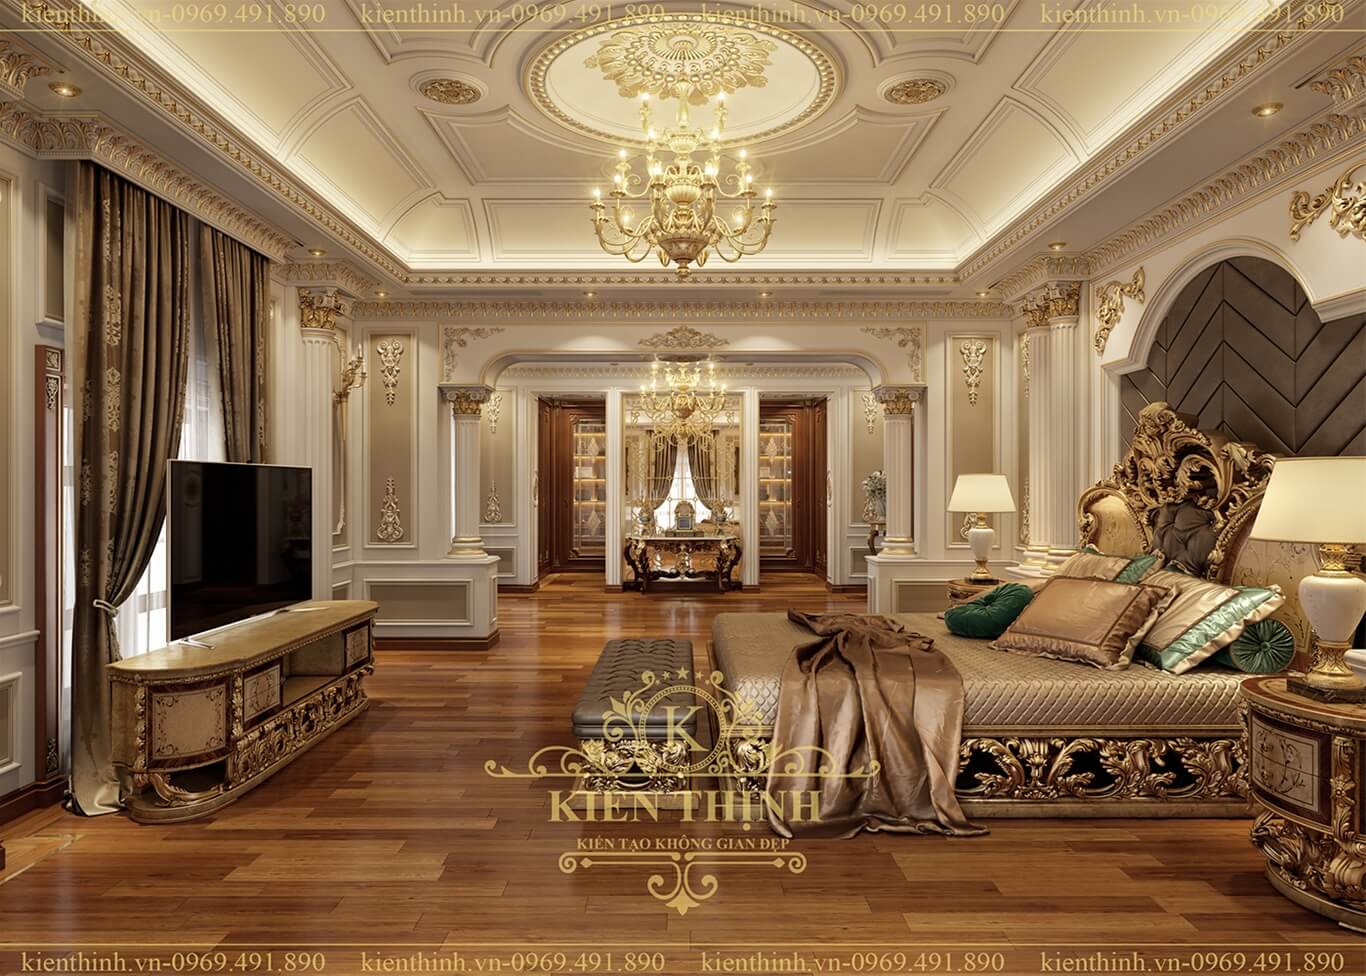 thiết kế nội thất phòng ngủ Master biệt thự lâu đài phong cách cổ điển châu Âu sang trọng ở Đồng Nai 04